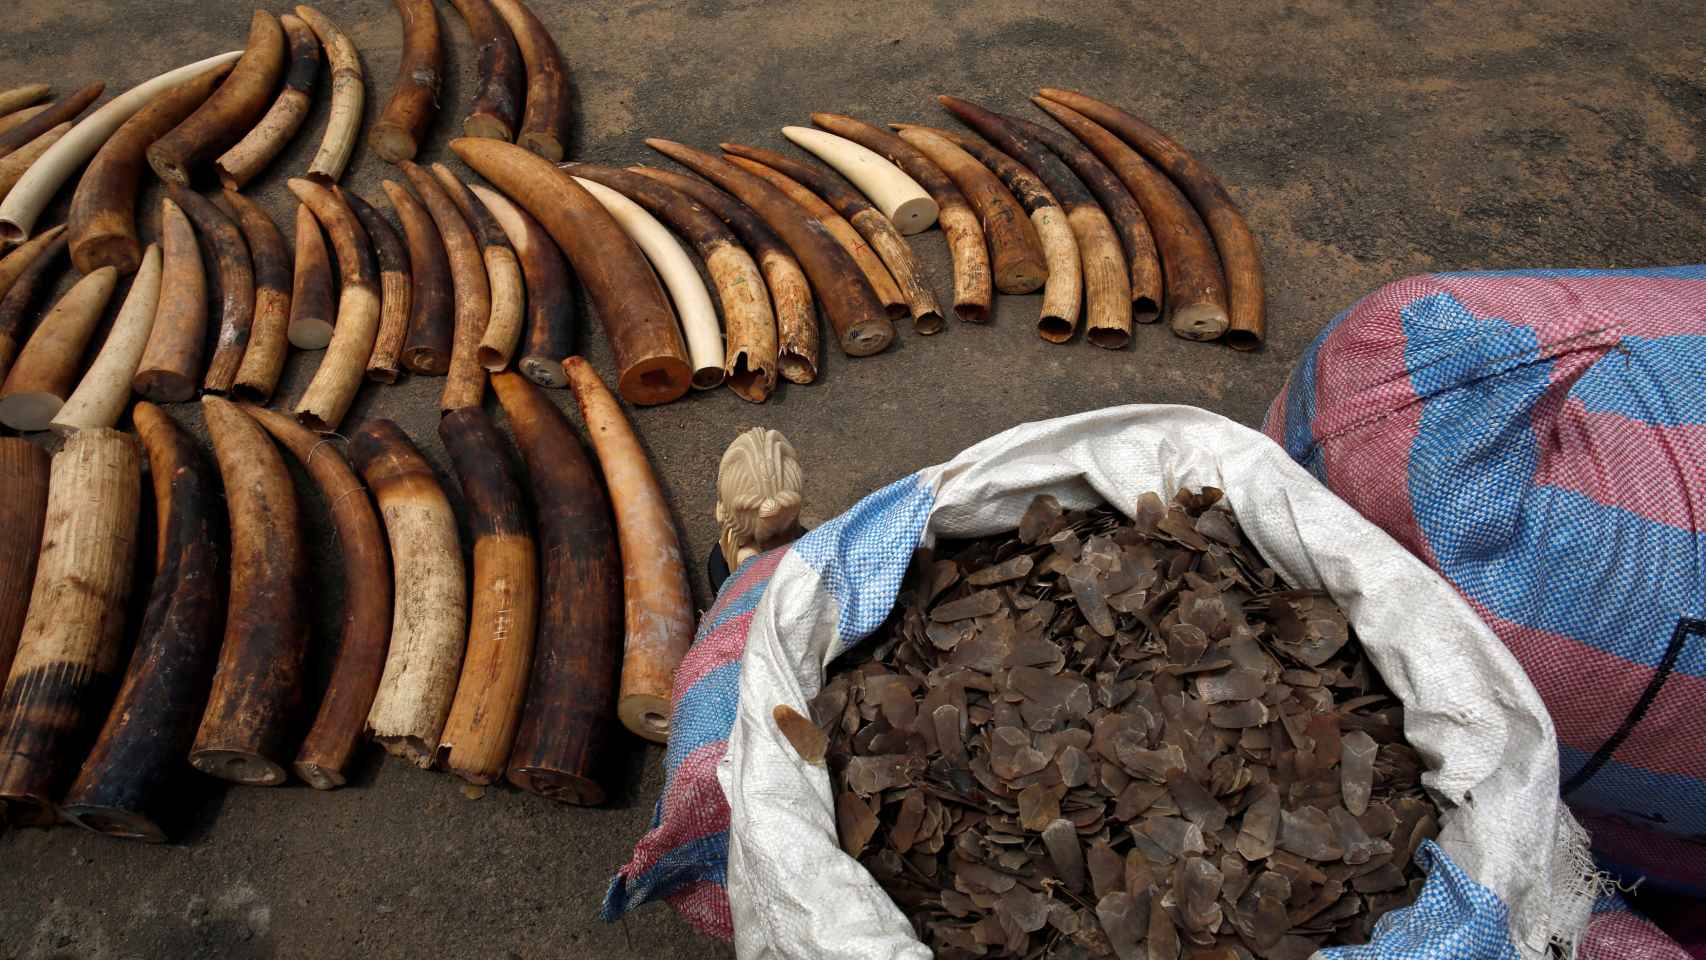 Indignante comercio de especies protegidas. Cuernos de elefante y escamas de pangolín decomisados a los furtivos por la Policía de Costa de Marfil en Abidjan. REUTERS/Luc Gnago.